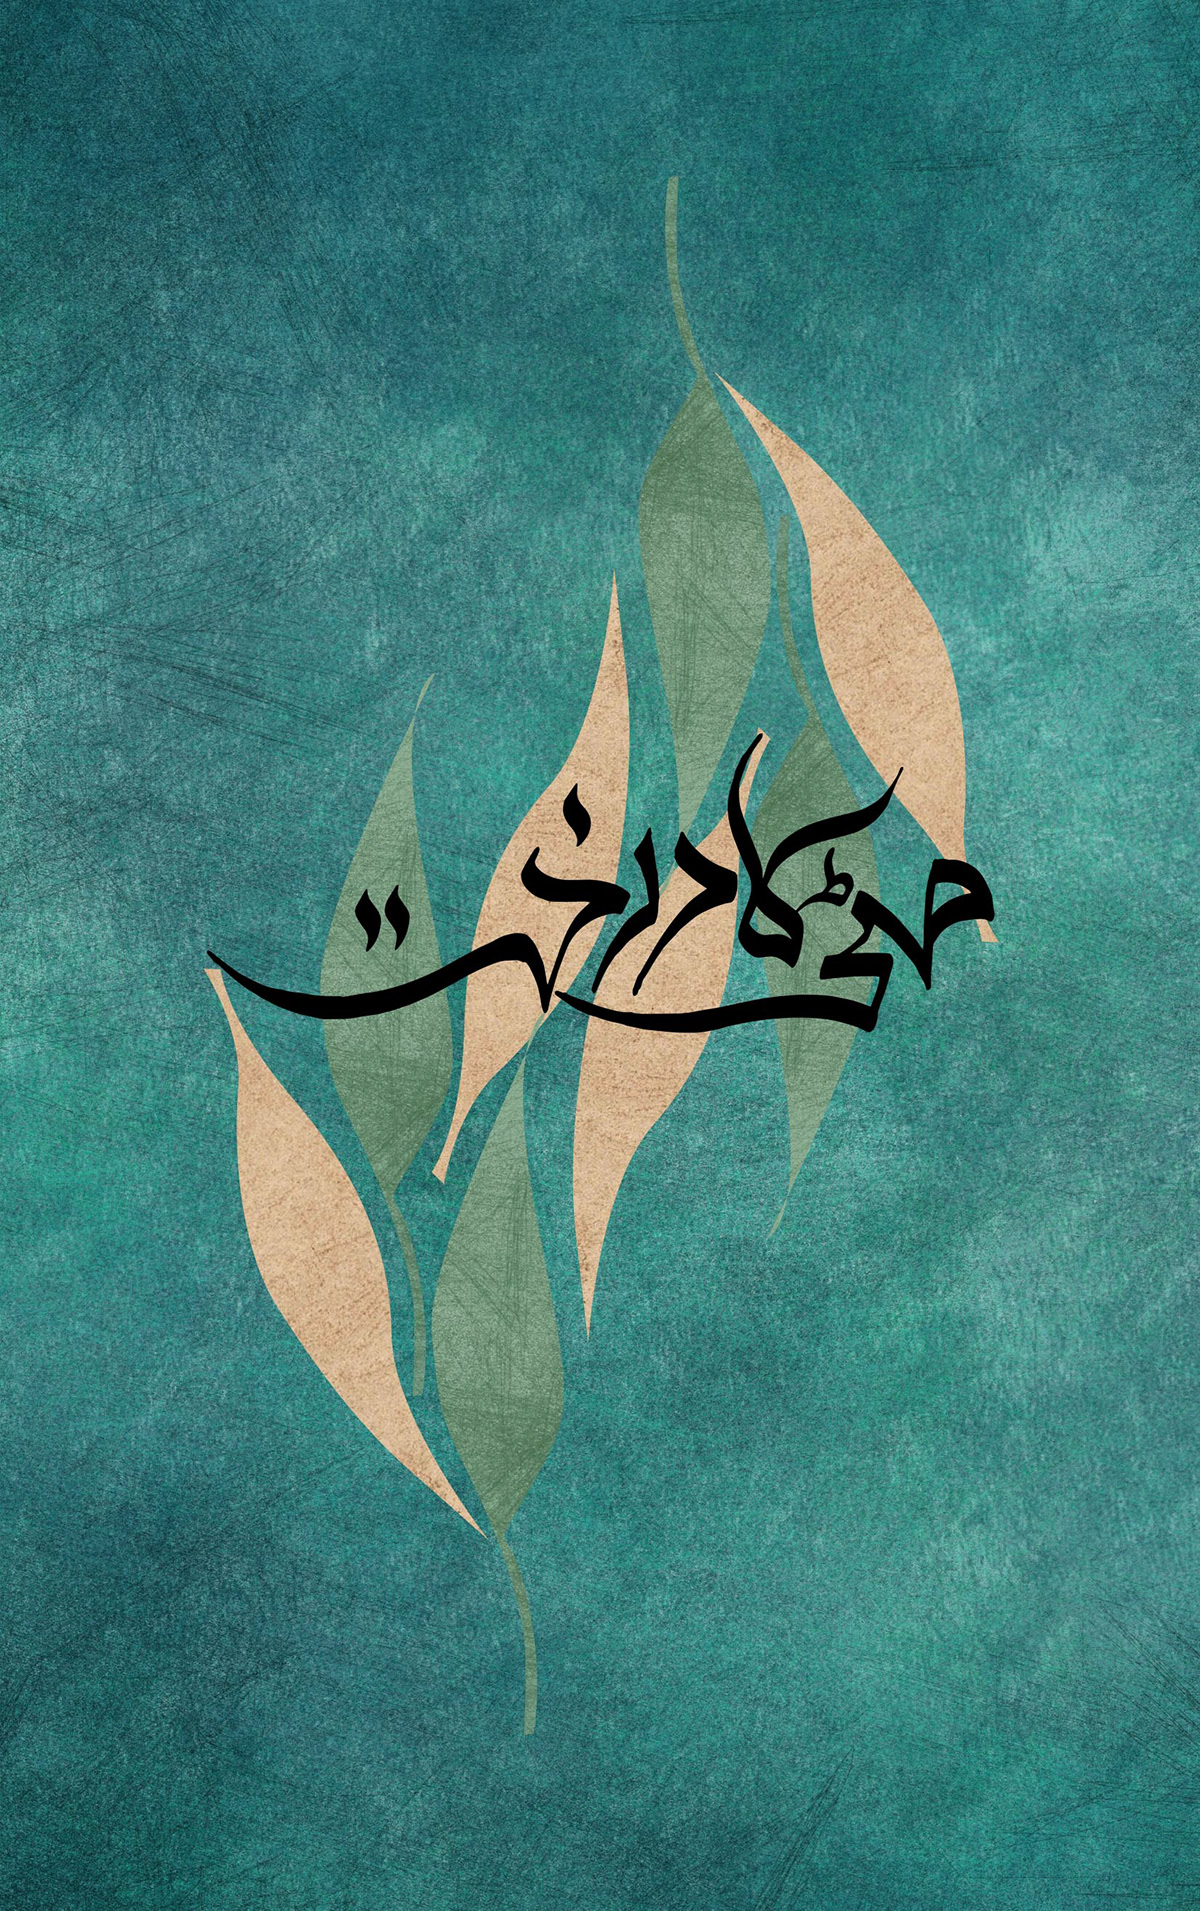 mitti ka darkht Urdu book  cover design